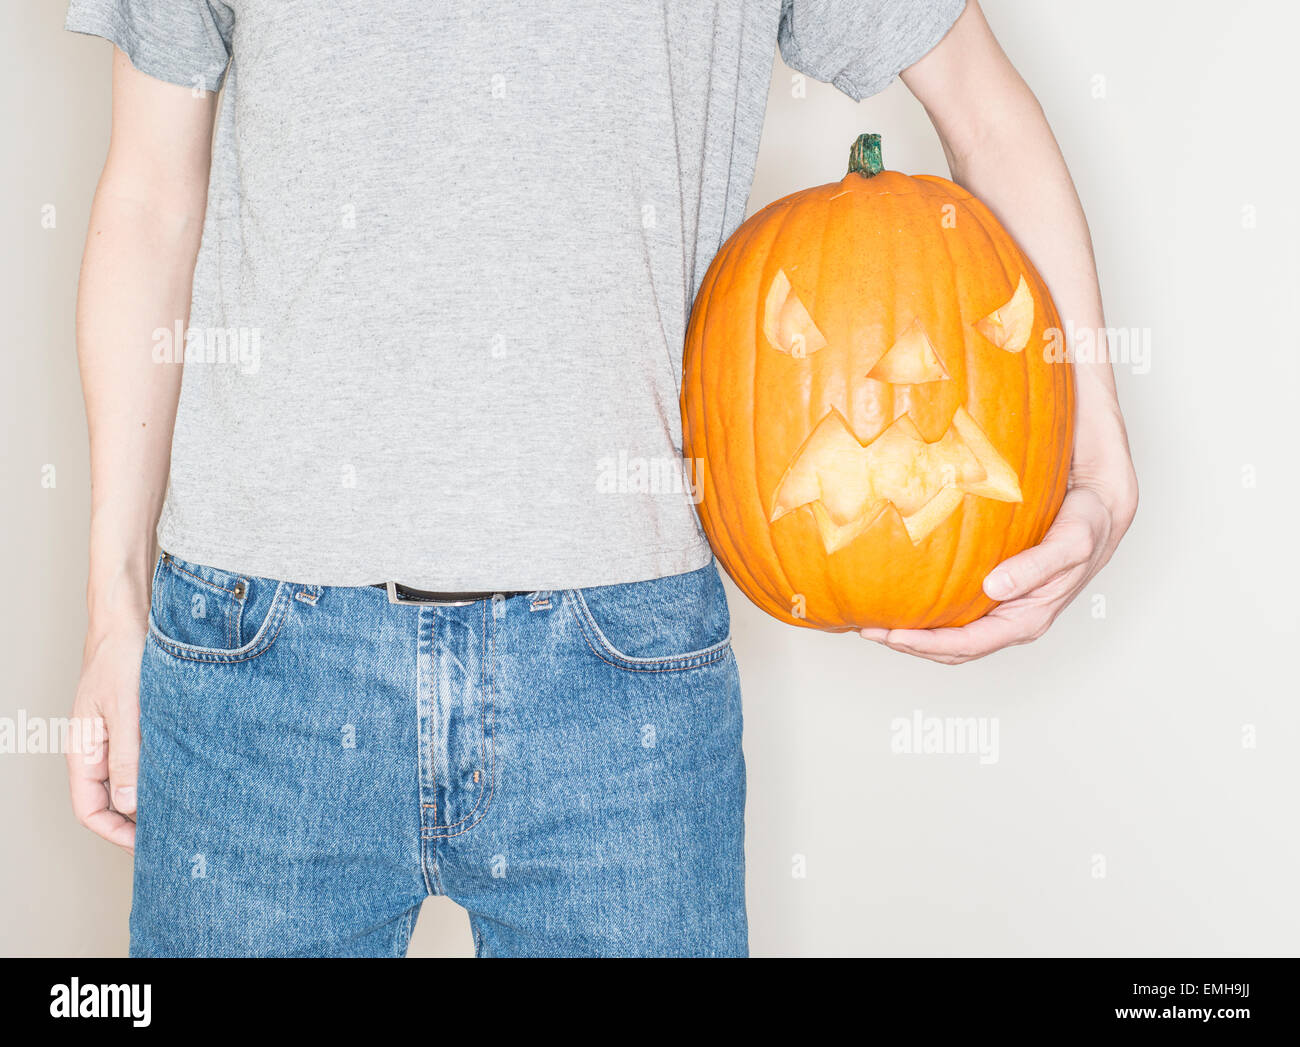 Homme tenant une citrouille halloween (jack o lantern) Banque D'Images